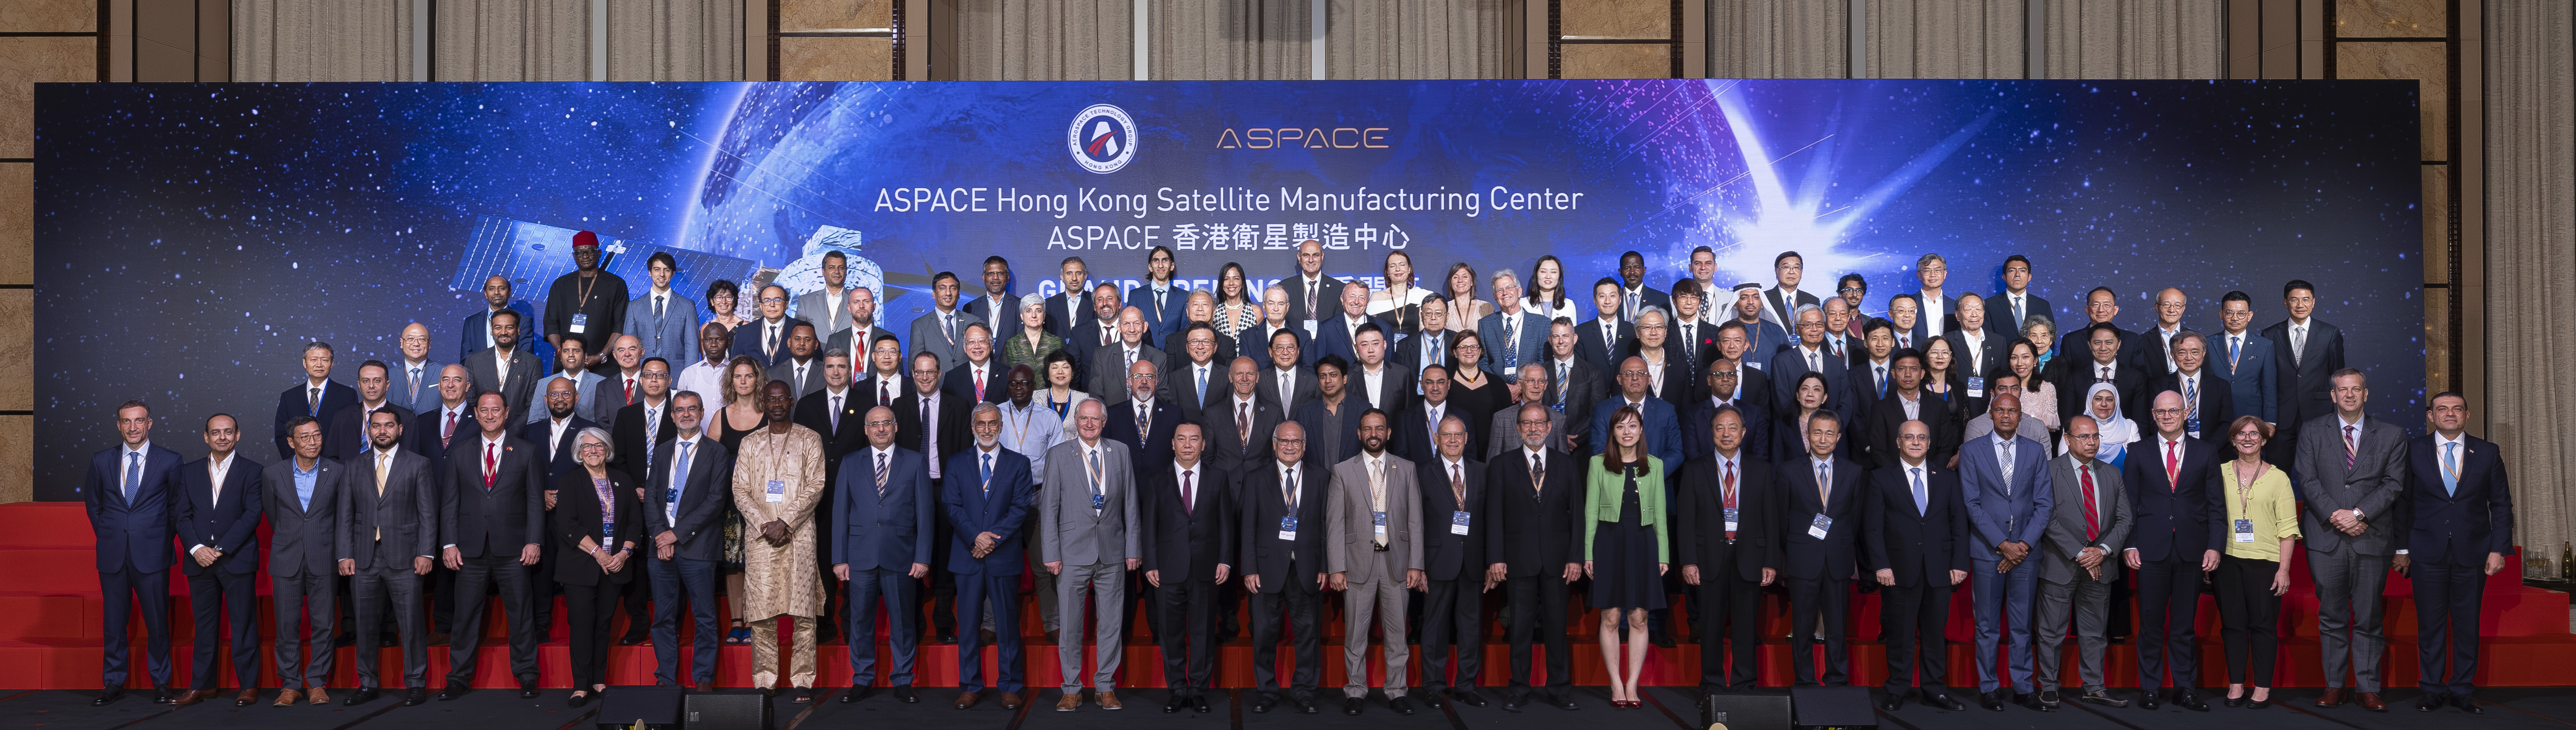 來自數十個國家和地區的航太機構及組織、商業合作夥伴及政府機關的150多名代表，一同出席ASPACE香港衛星製造中心的開幕典禮，見證全球商業航太工業開啟新時代。